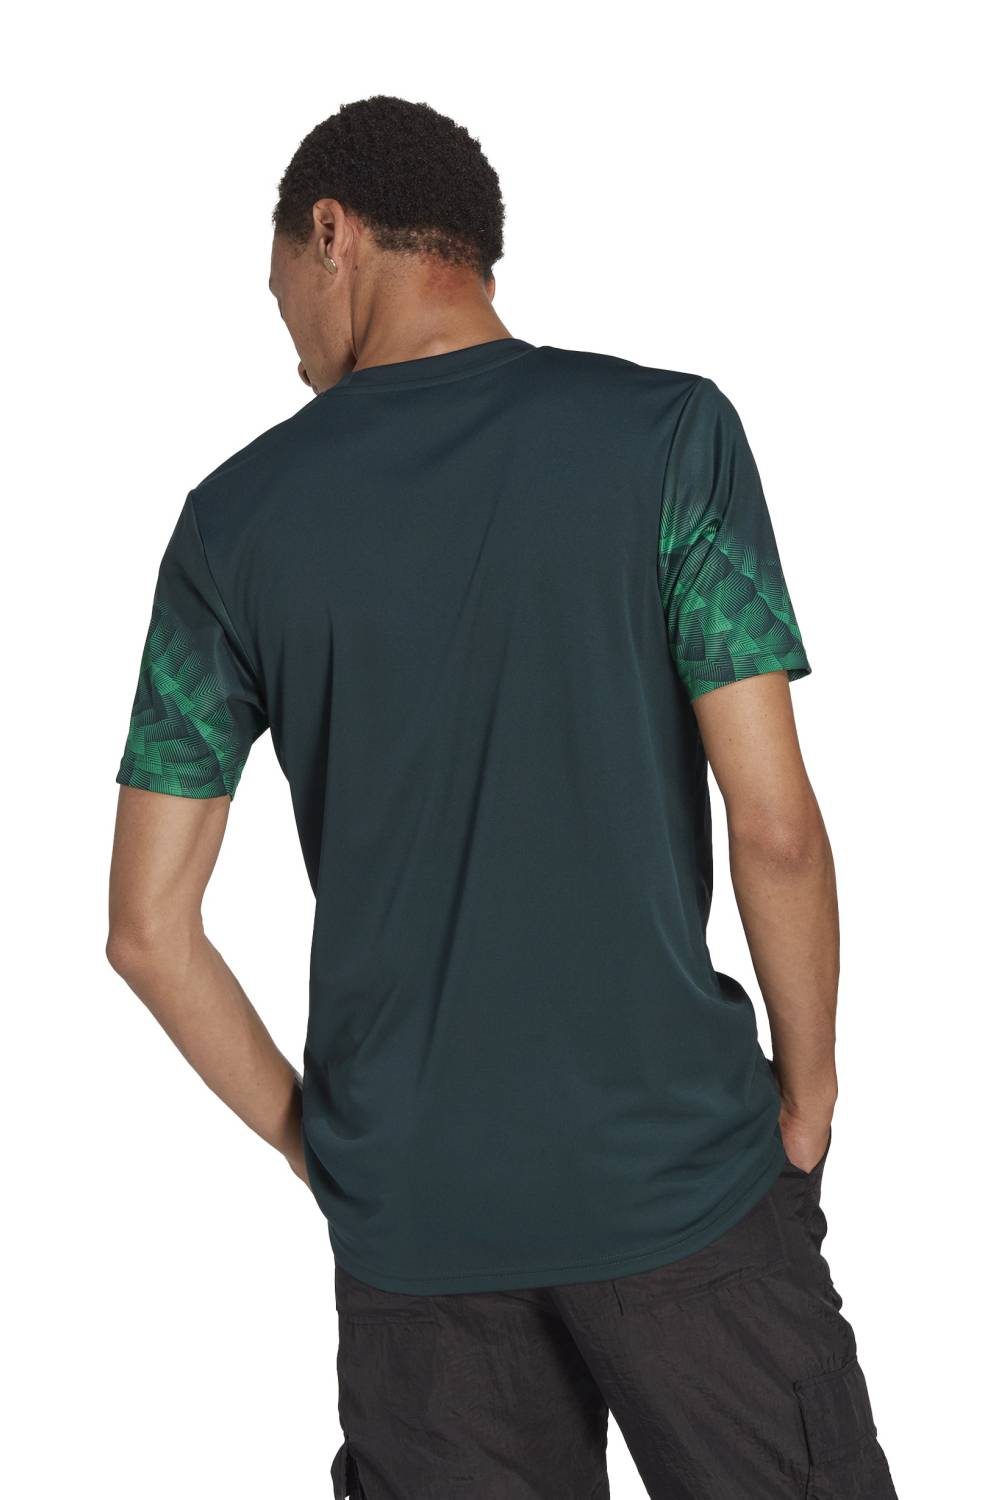 ADIDAS - Camiseta De Fútbol México Hombre Adidas